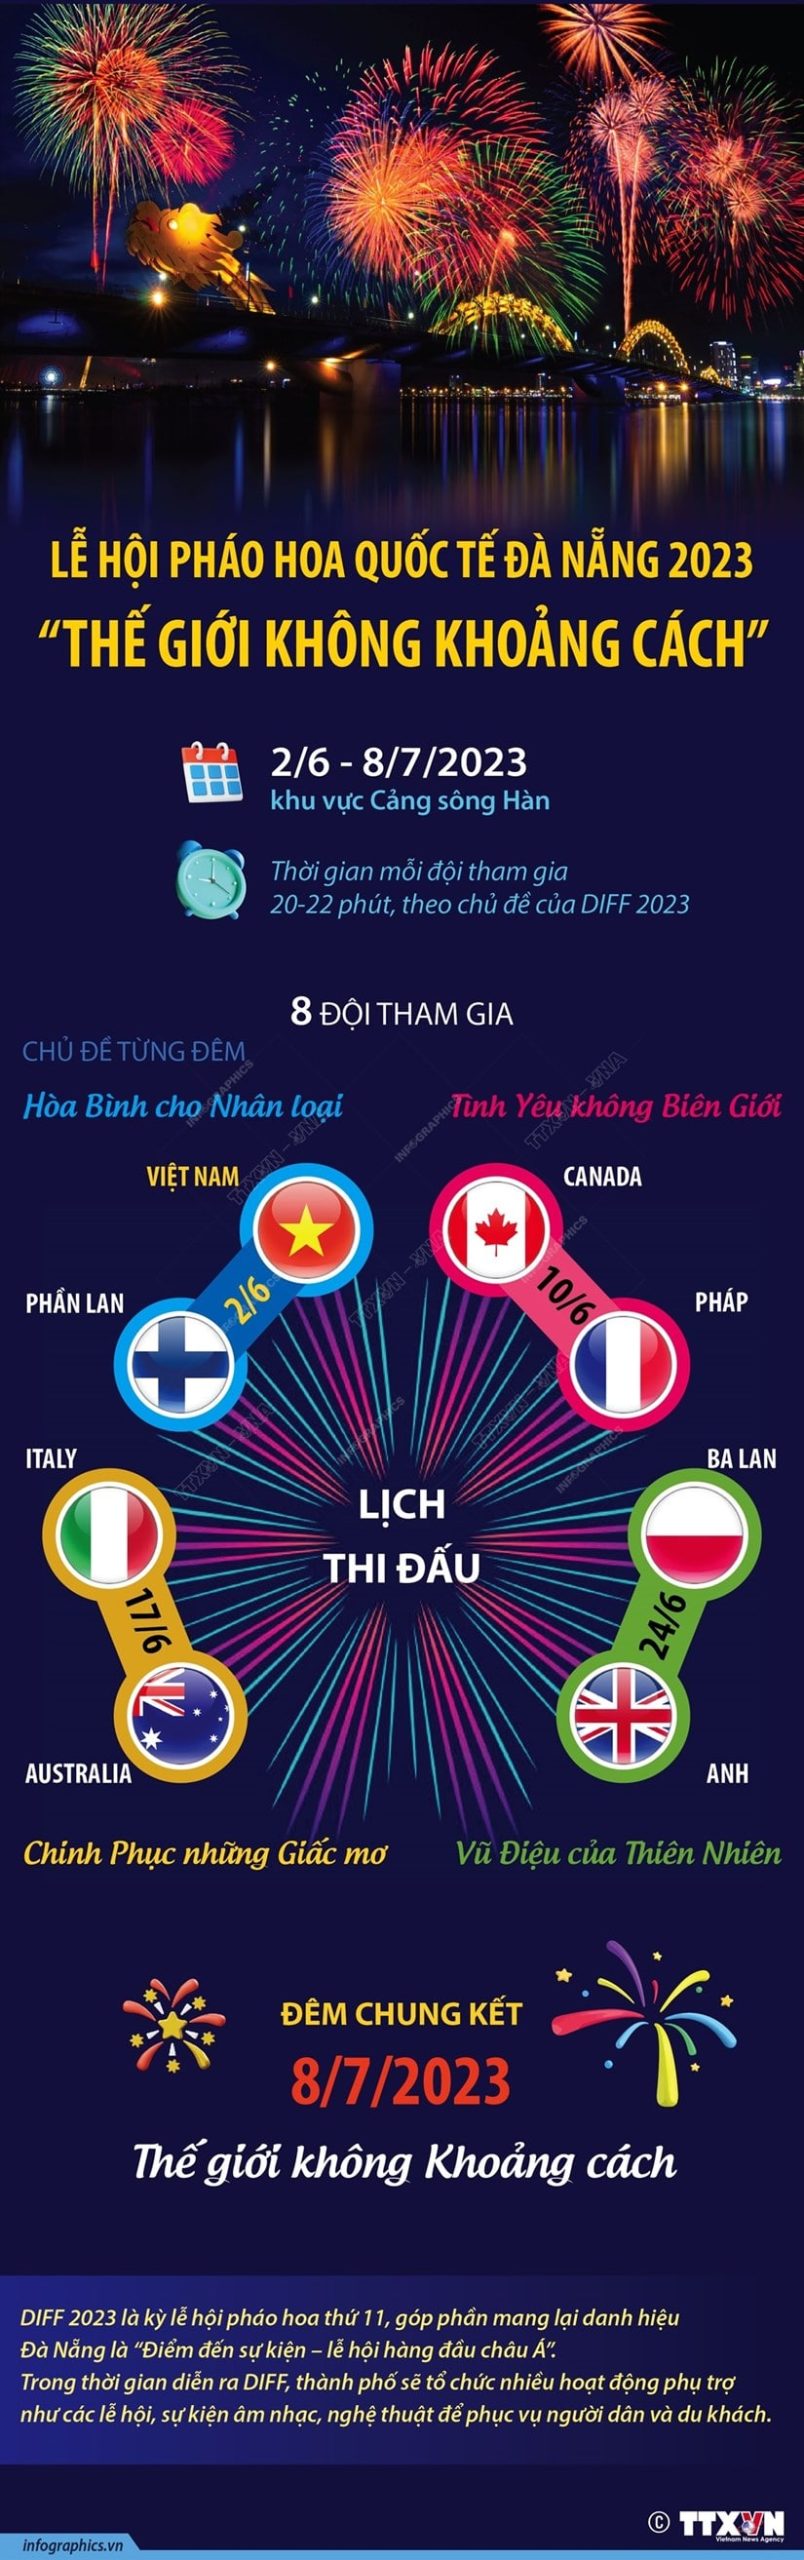 Le hoi phao hoa quoc te Da Nang 2023 min scaled - Lễ hội pháo hoa quốc tế Đà Nẵng 2023: Thế giới không khoảng cách